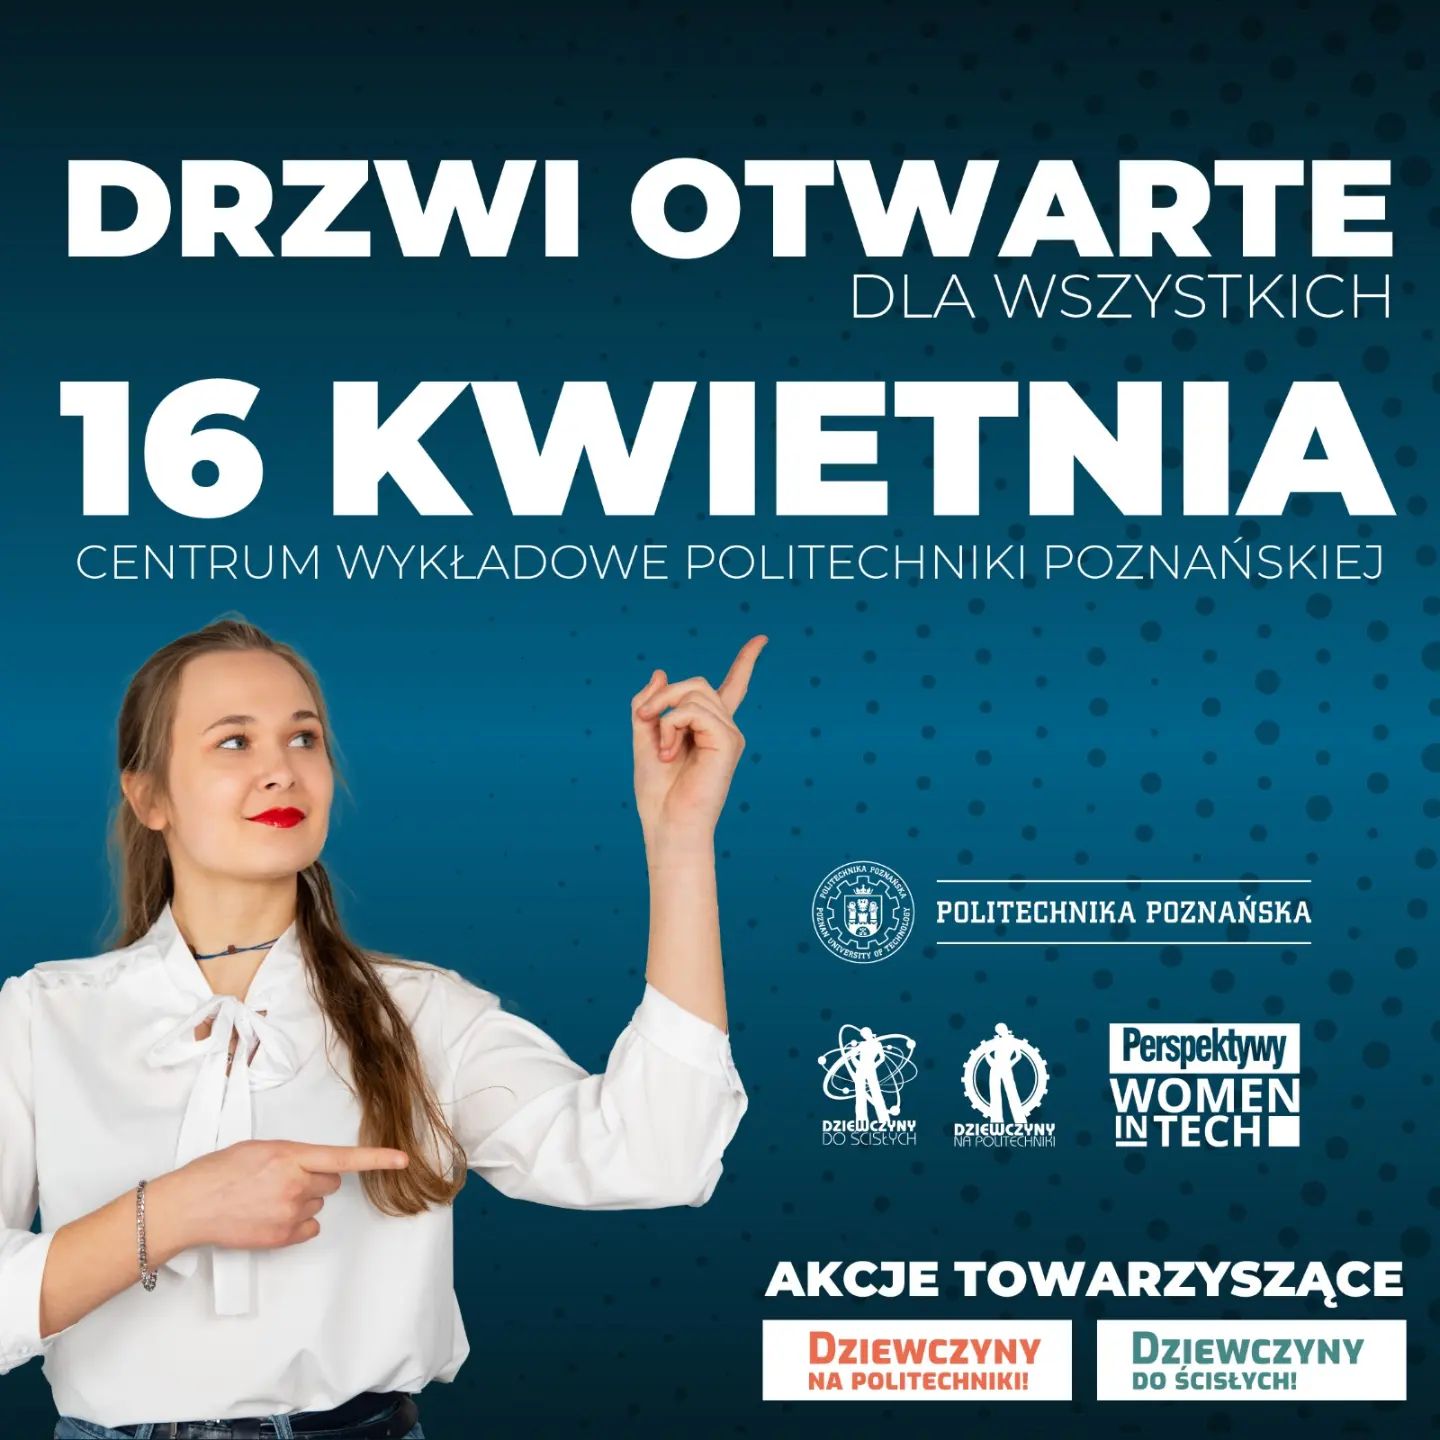 Już 16 kwietnia br. odbędą się Drzwi Otwarte na Politechnice Poznańskiej! Szczegóły wkrótce...